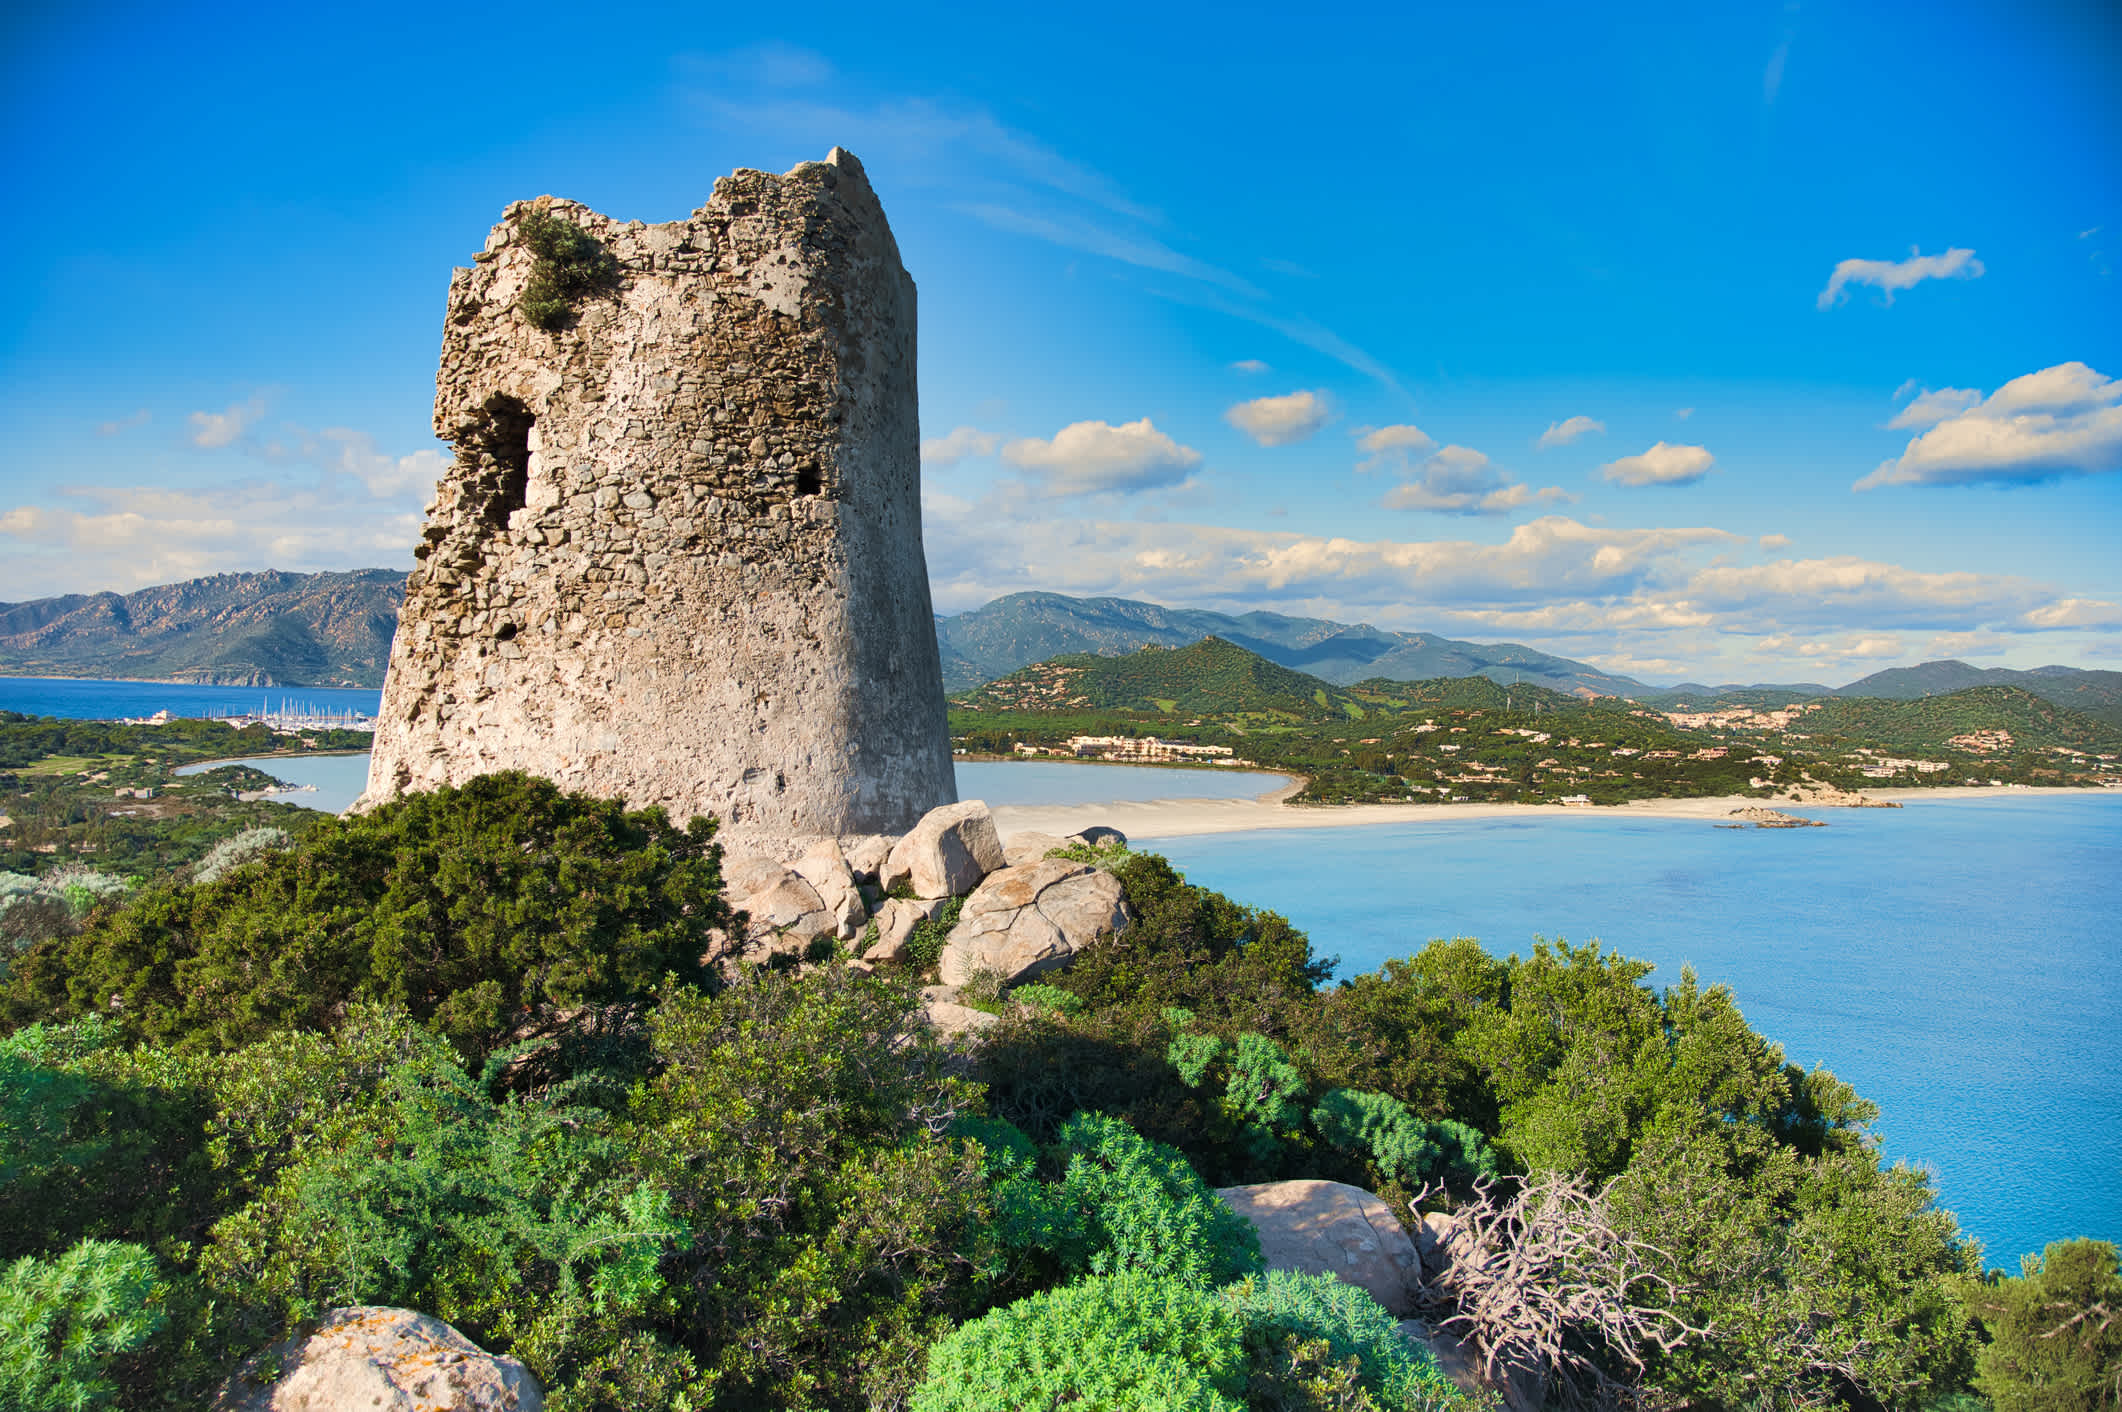 Alter Wachturm auf einem Hügel mit Meer im Hintergrund auf Sardinien.